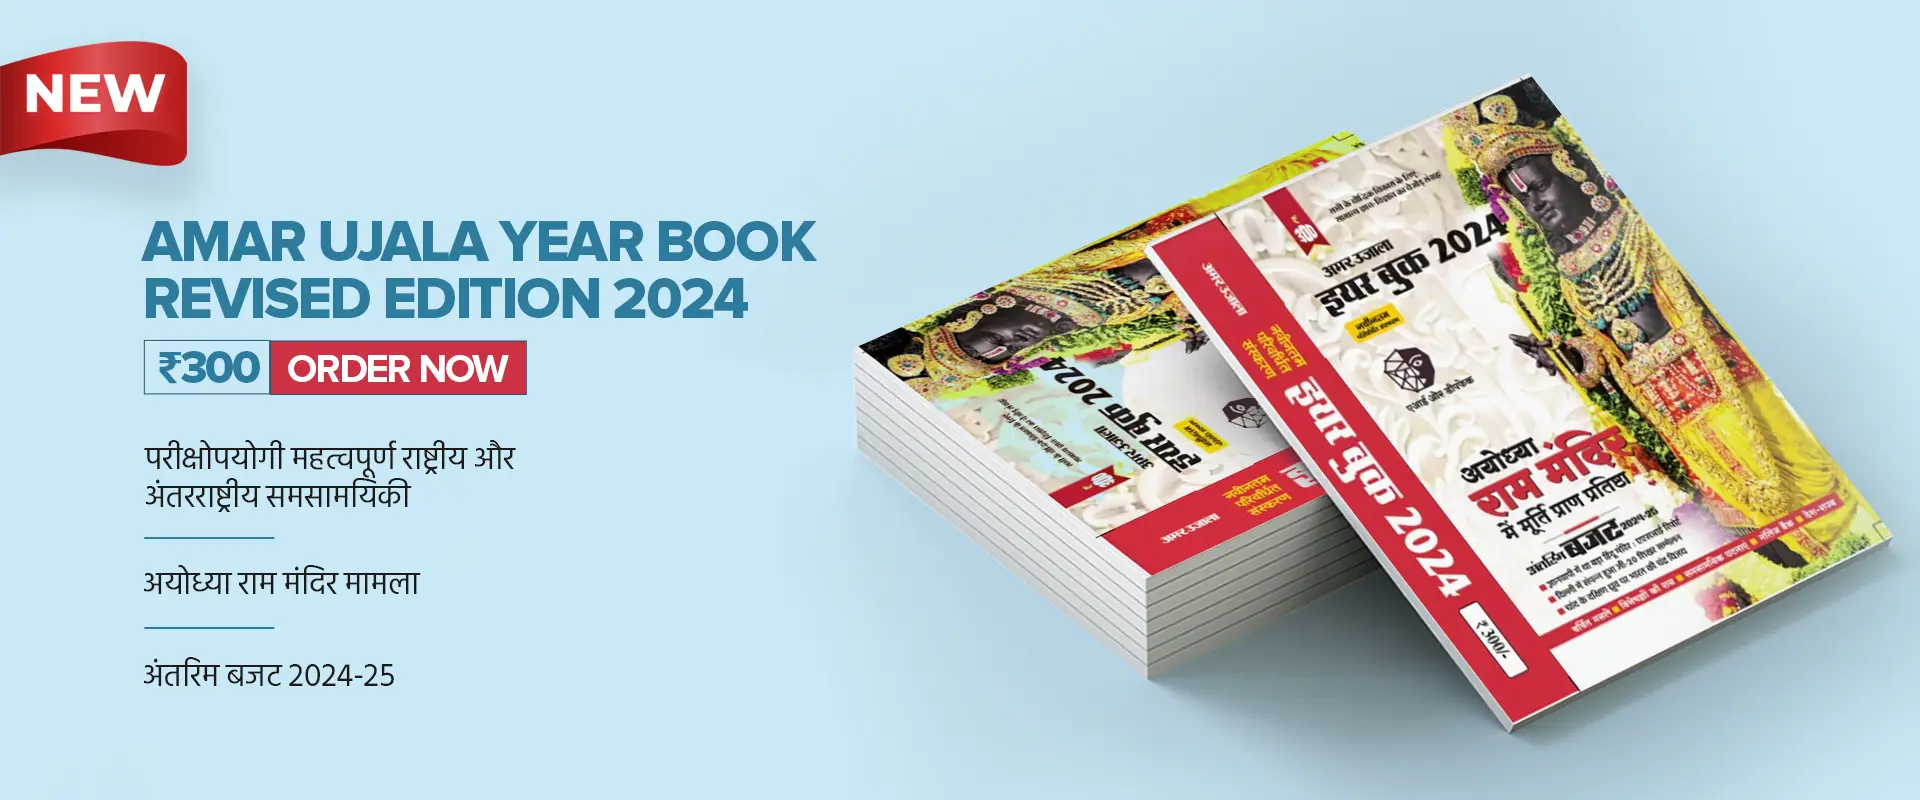 yearbook-2024-desk